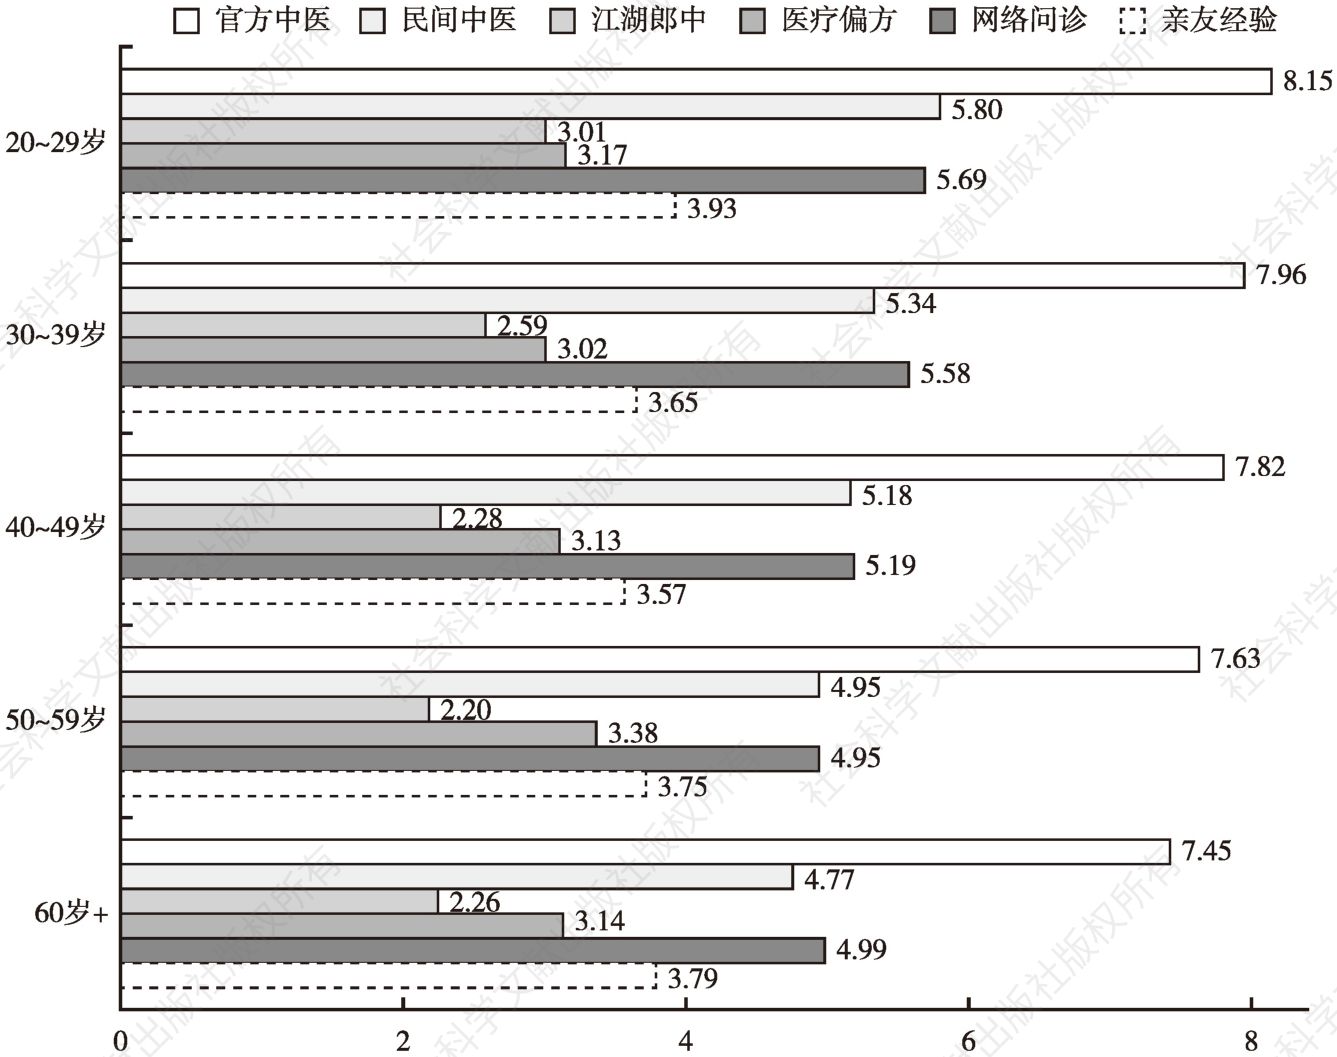 图6-5 不同年龄段的受访医师对六种医疗形式评价情况